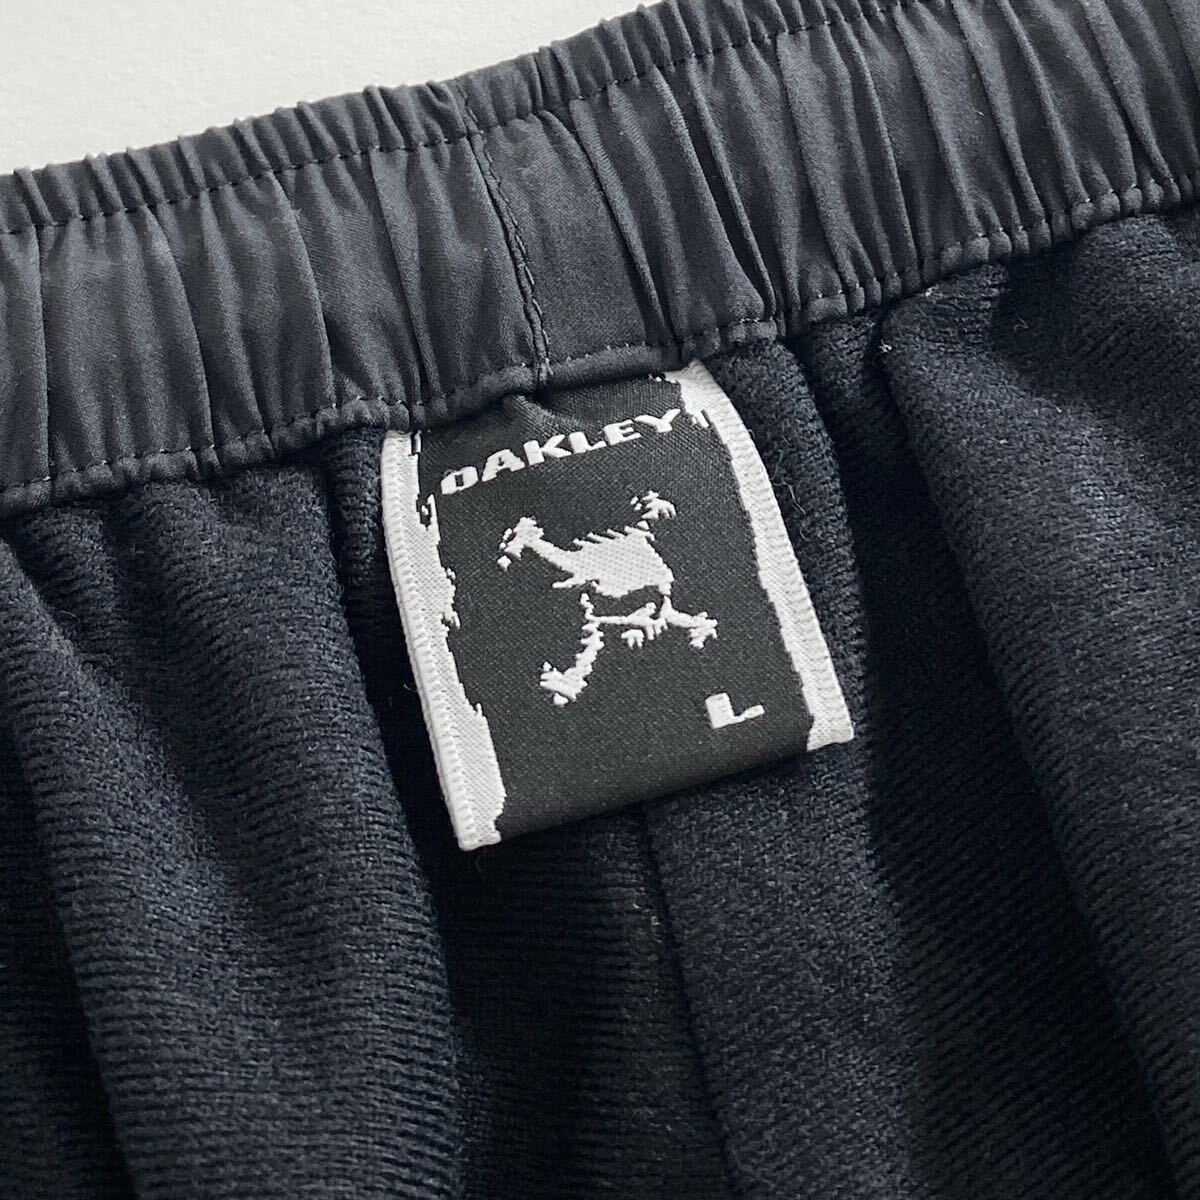 Ac29 OAKLEY オークリー ロングパンツ サイズL ブラック メンズ スポーツウェア 裾ドローコード ジップアップ ロゴ 刺繍 ボトムス_画像8